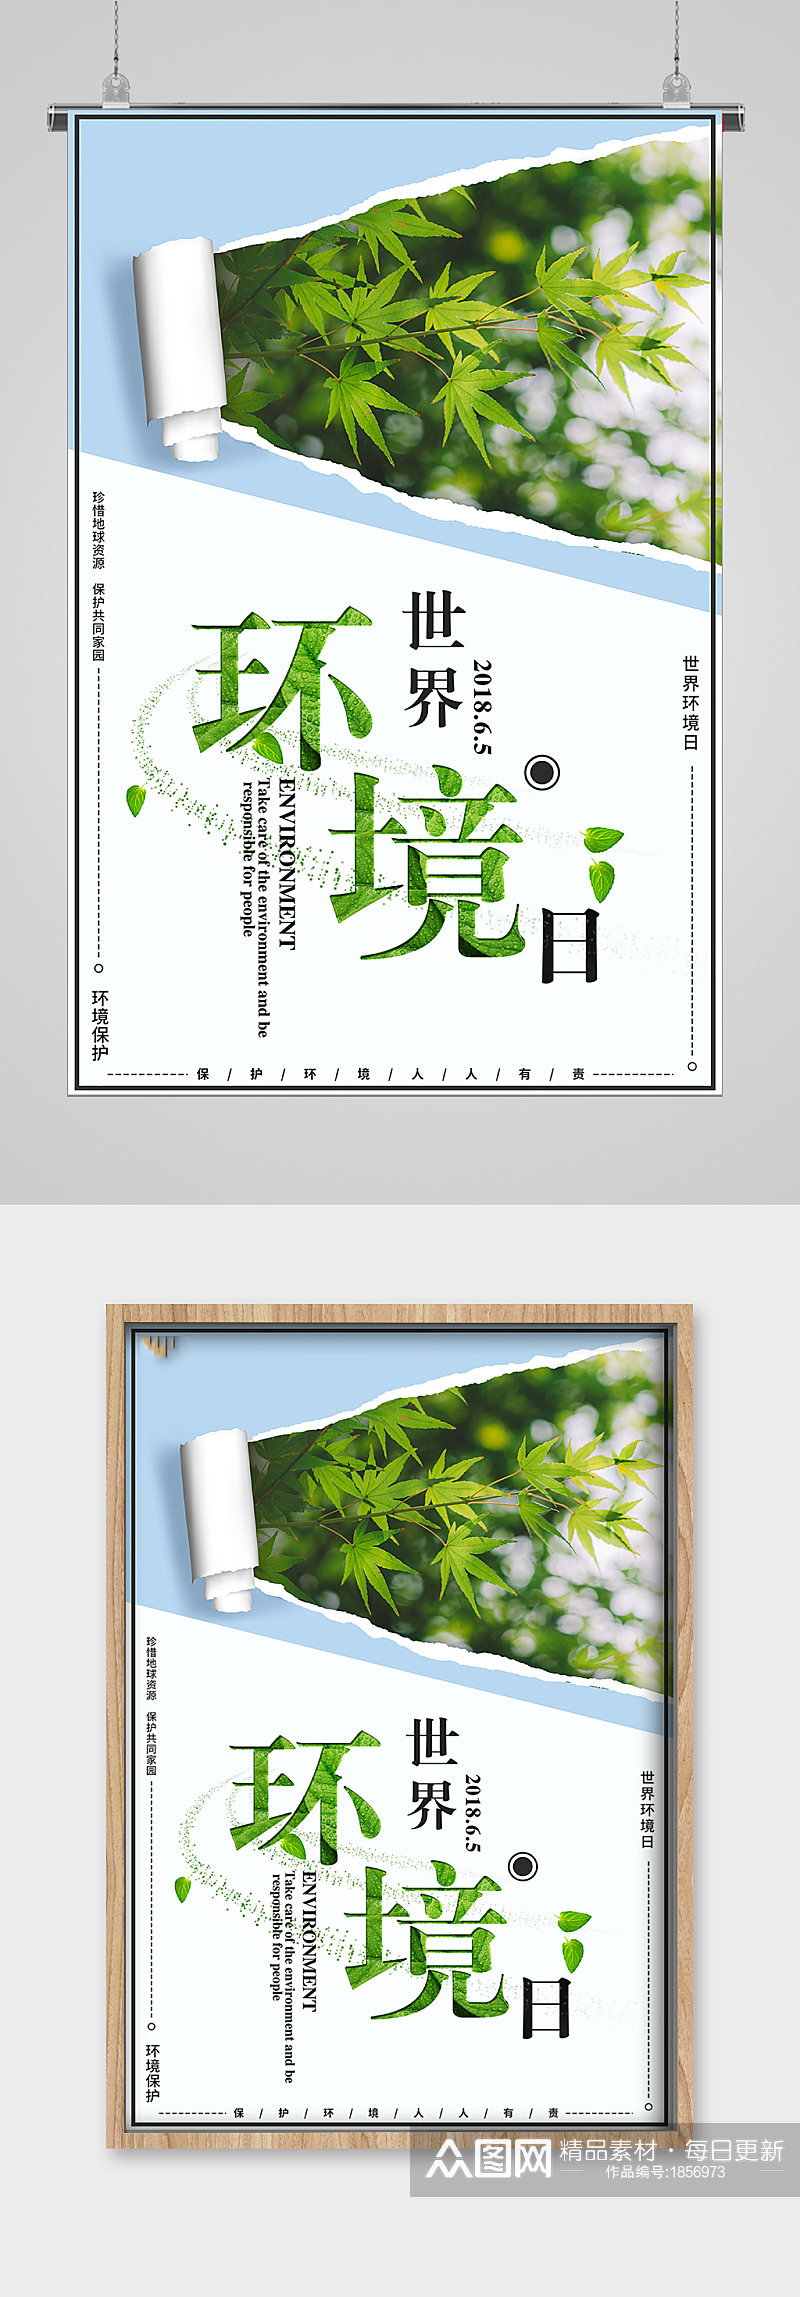 世界环境日绿色家园宣传海报素材